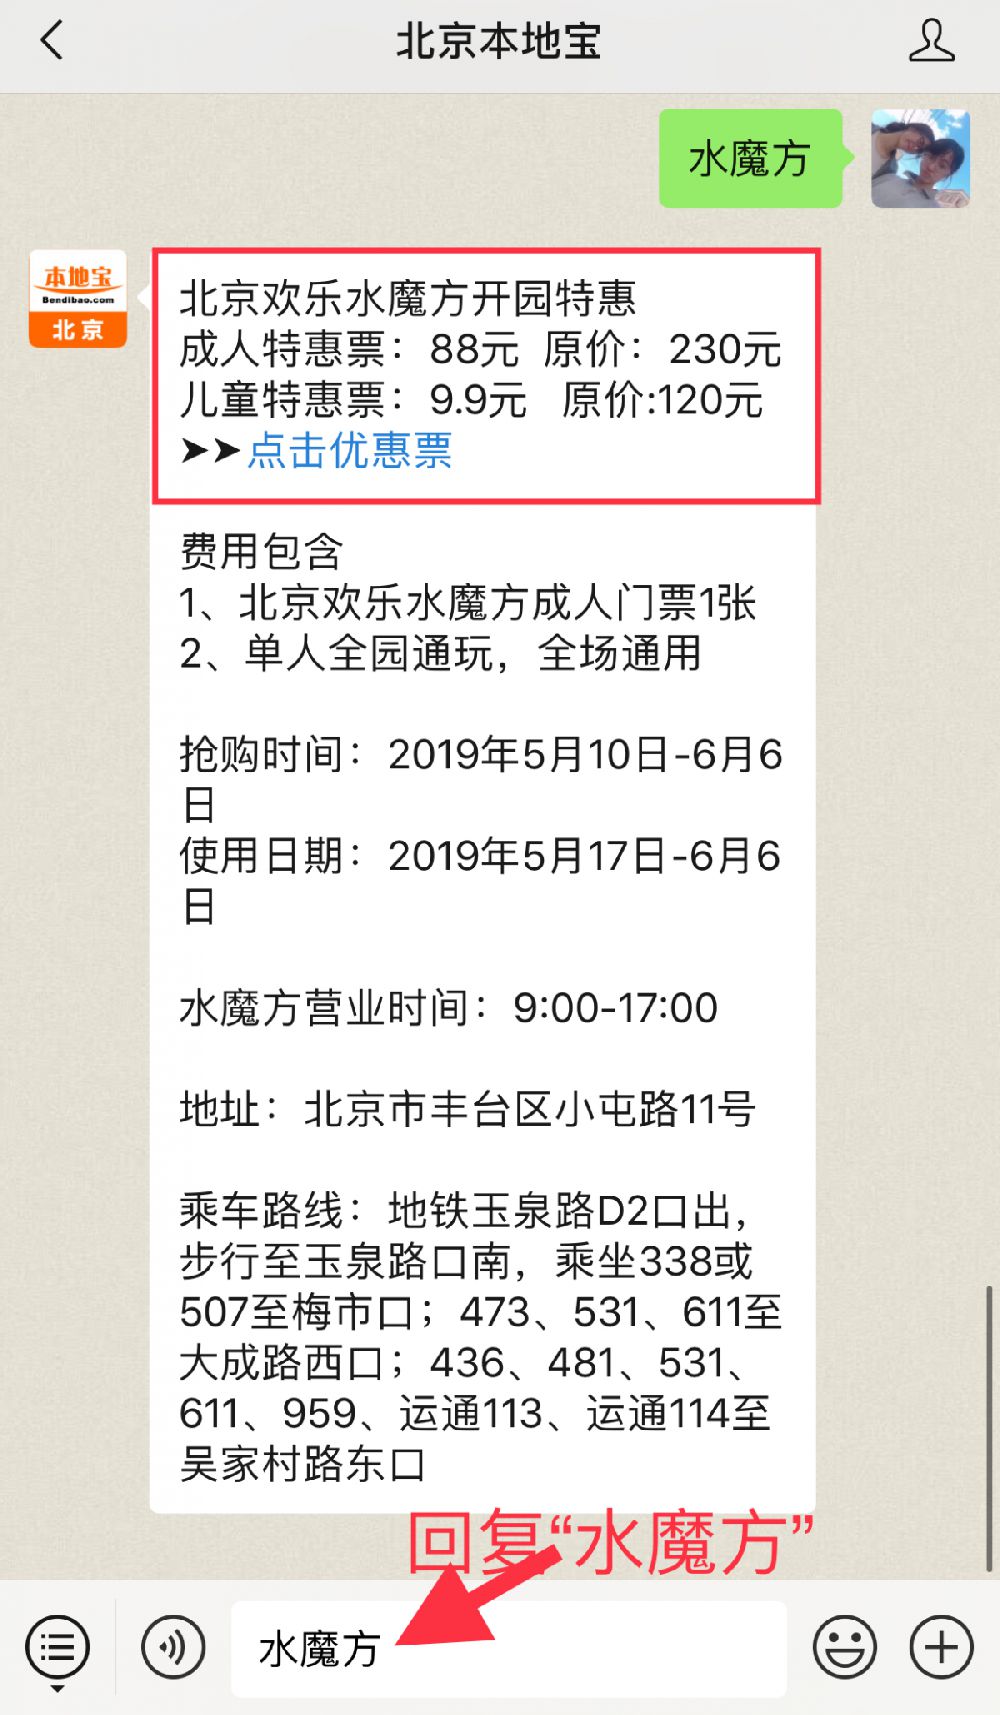 2019北京乐多港奇幻乐园端午优惠门票及购买入口